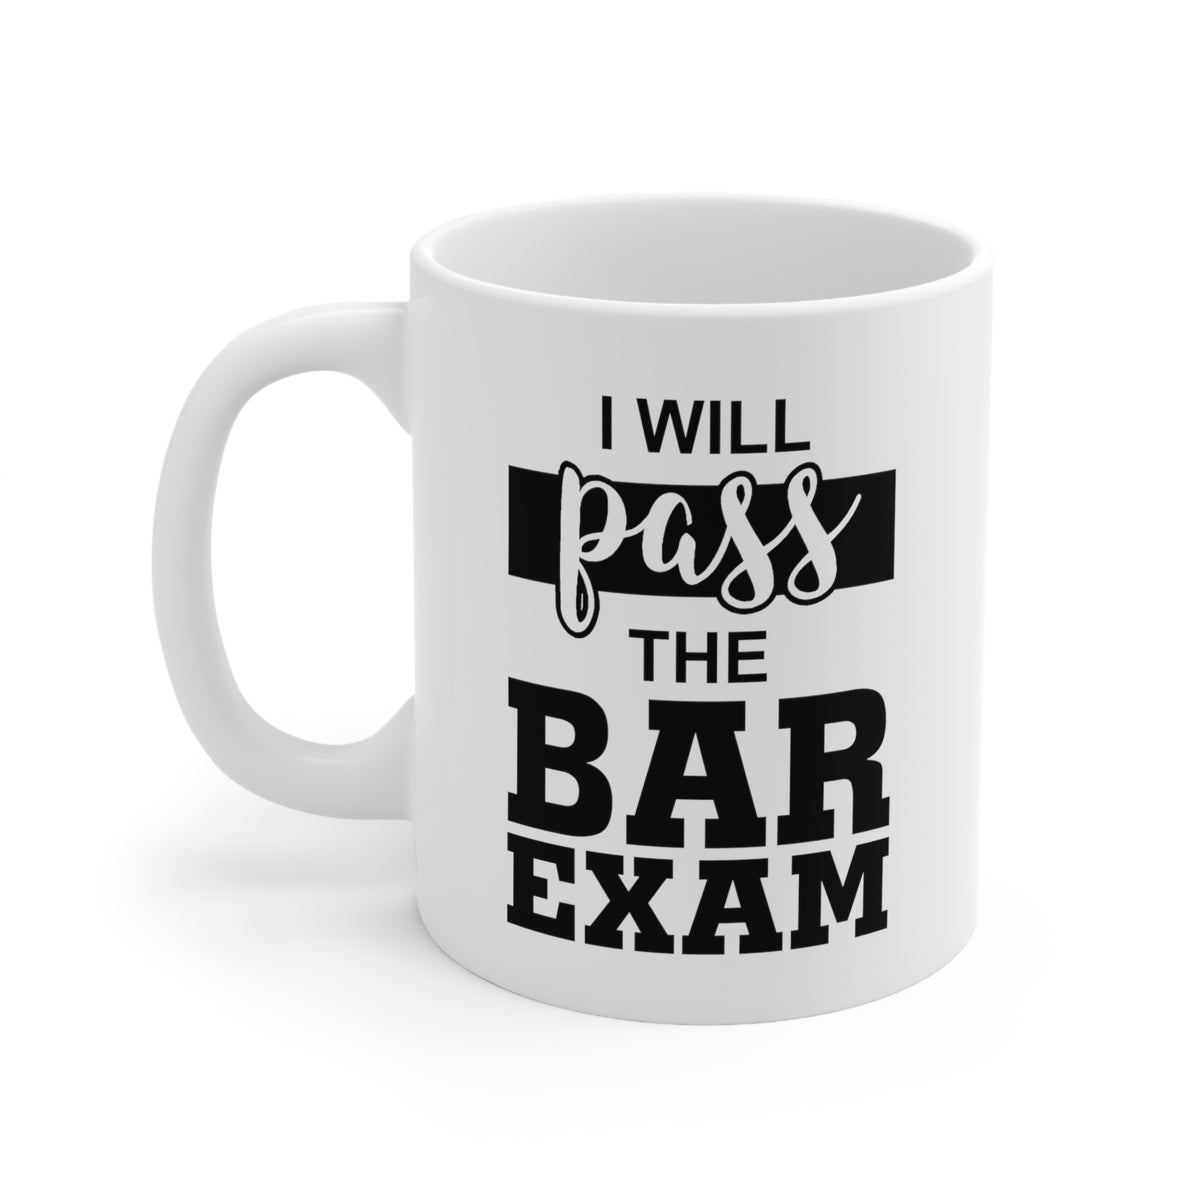 I Will Pass The Bar Exam Coffee Mug - 11oz Mug - Inspiration Gift For Lawyer